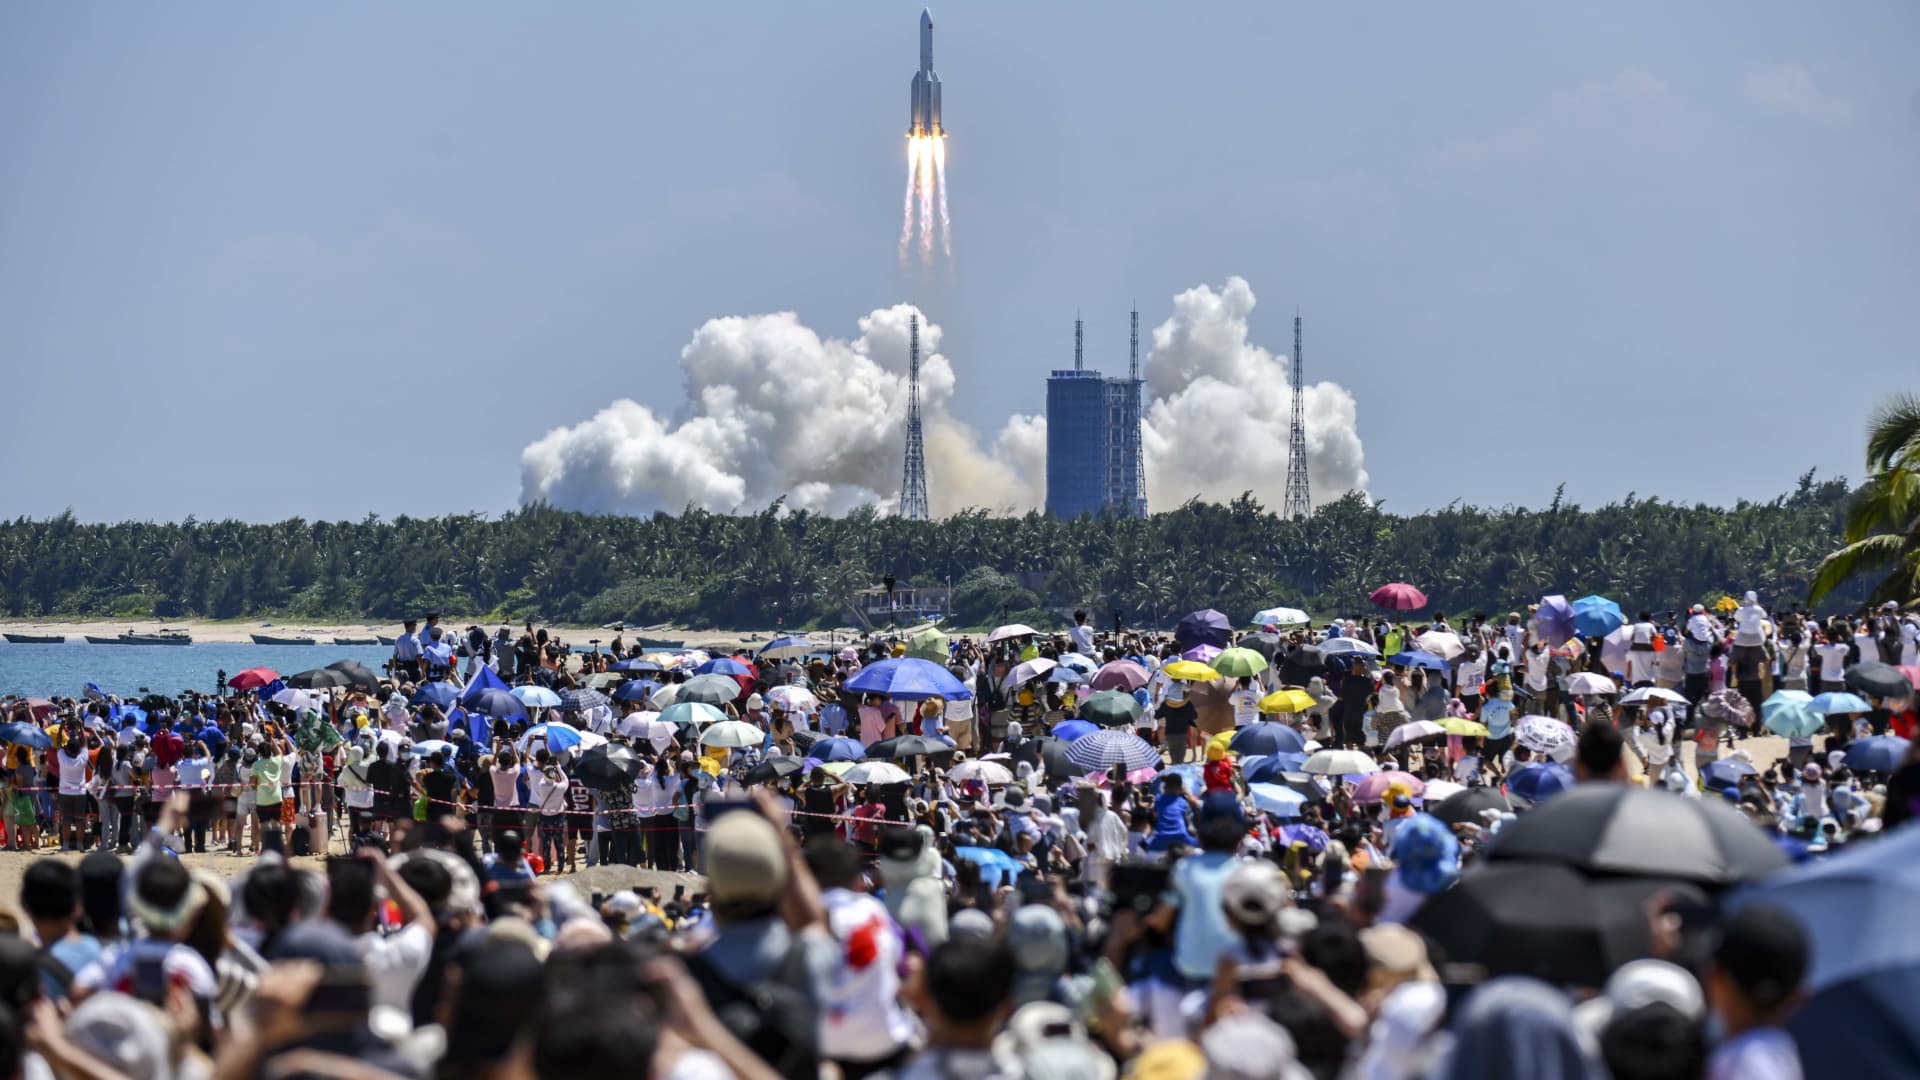 Misil chino cae a la Tierra, la NASA dice que Beijing no compartió información